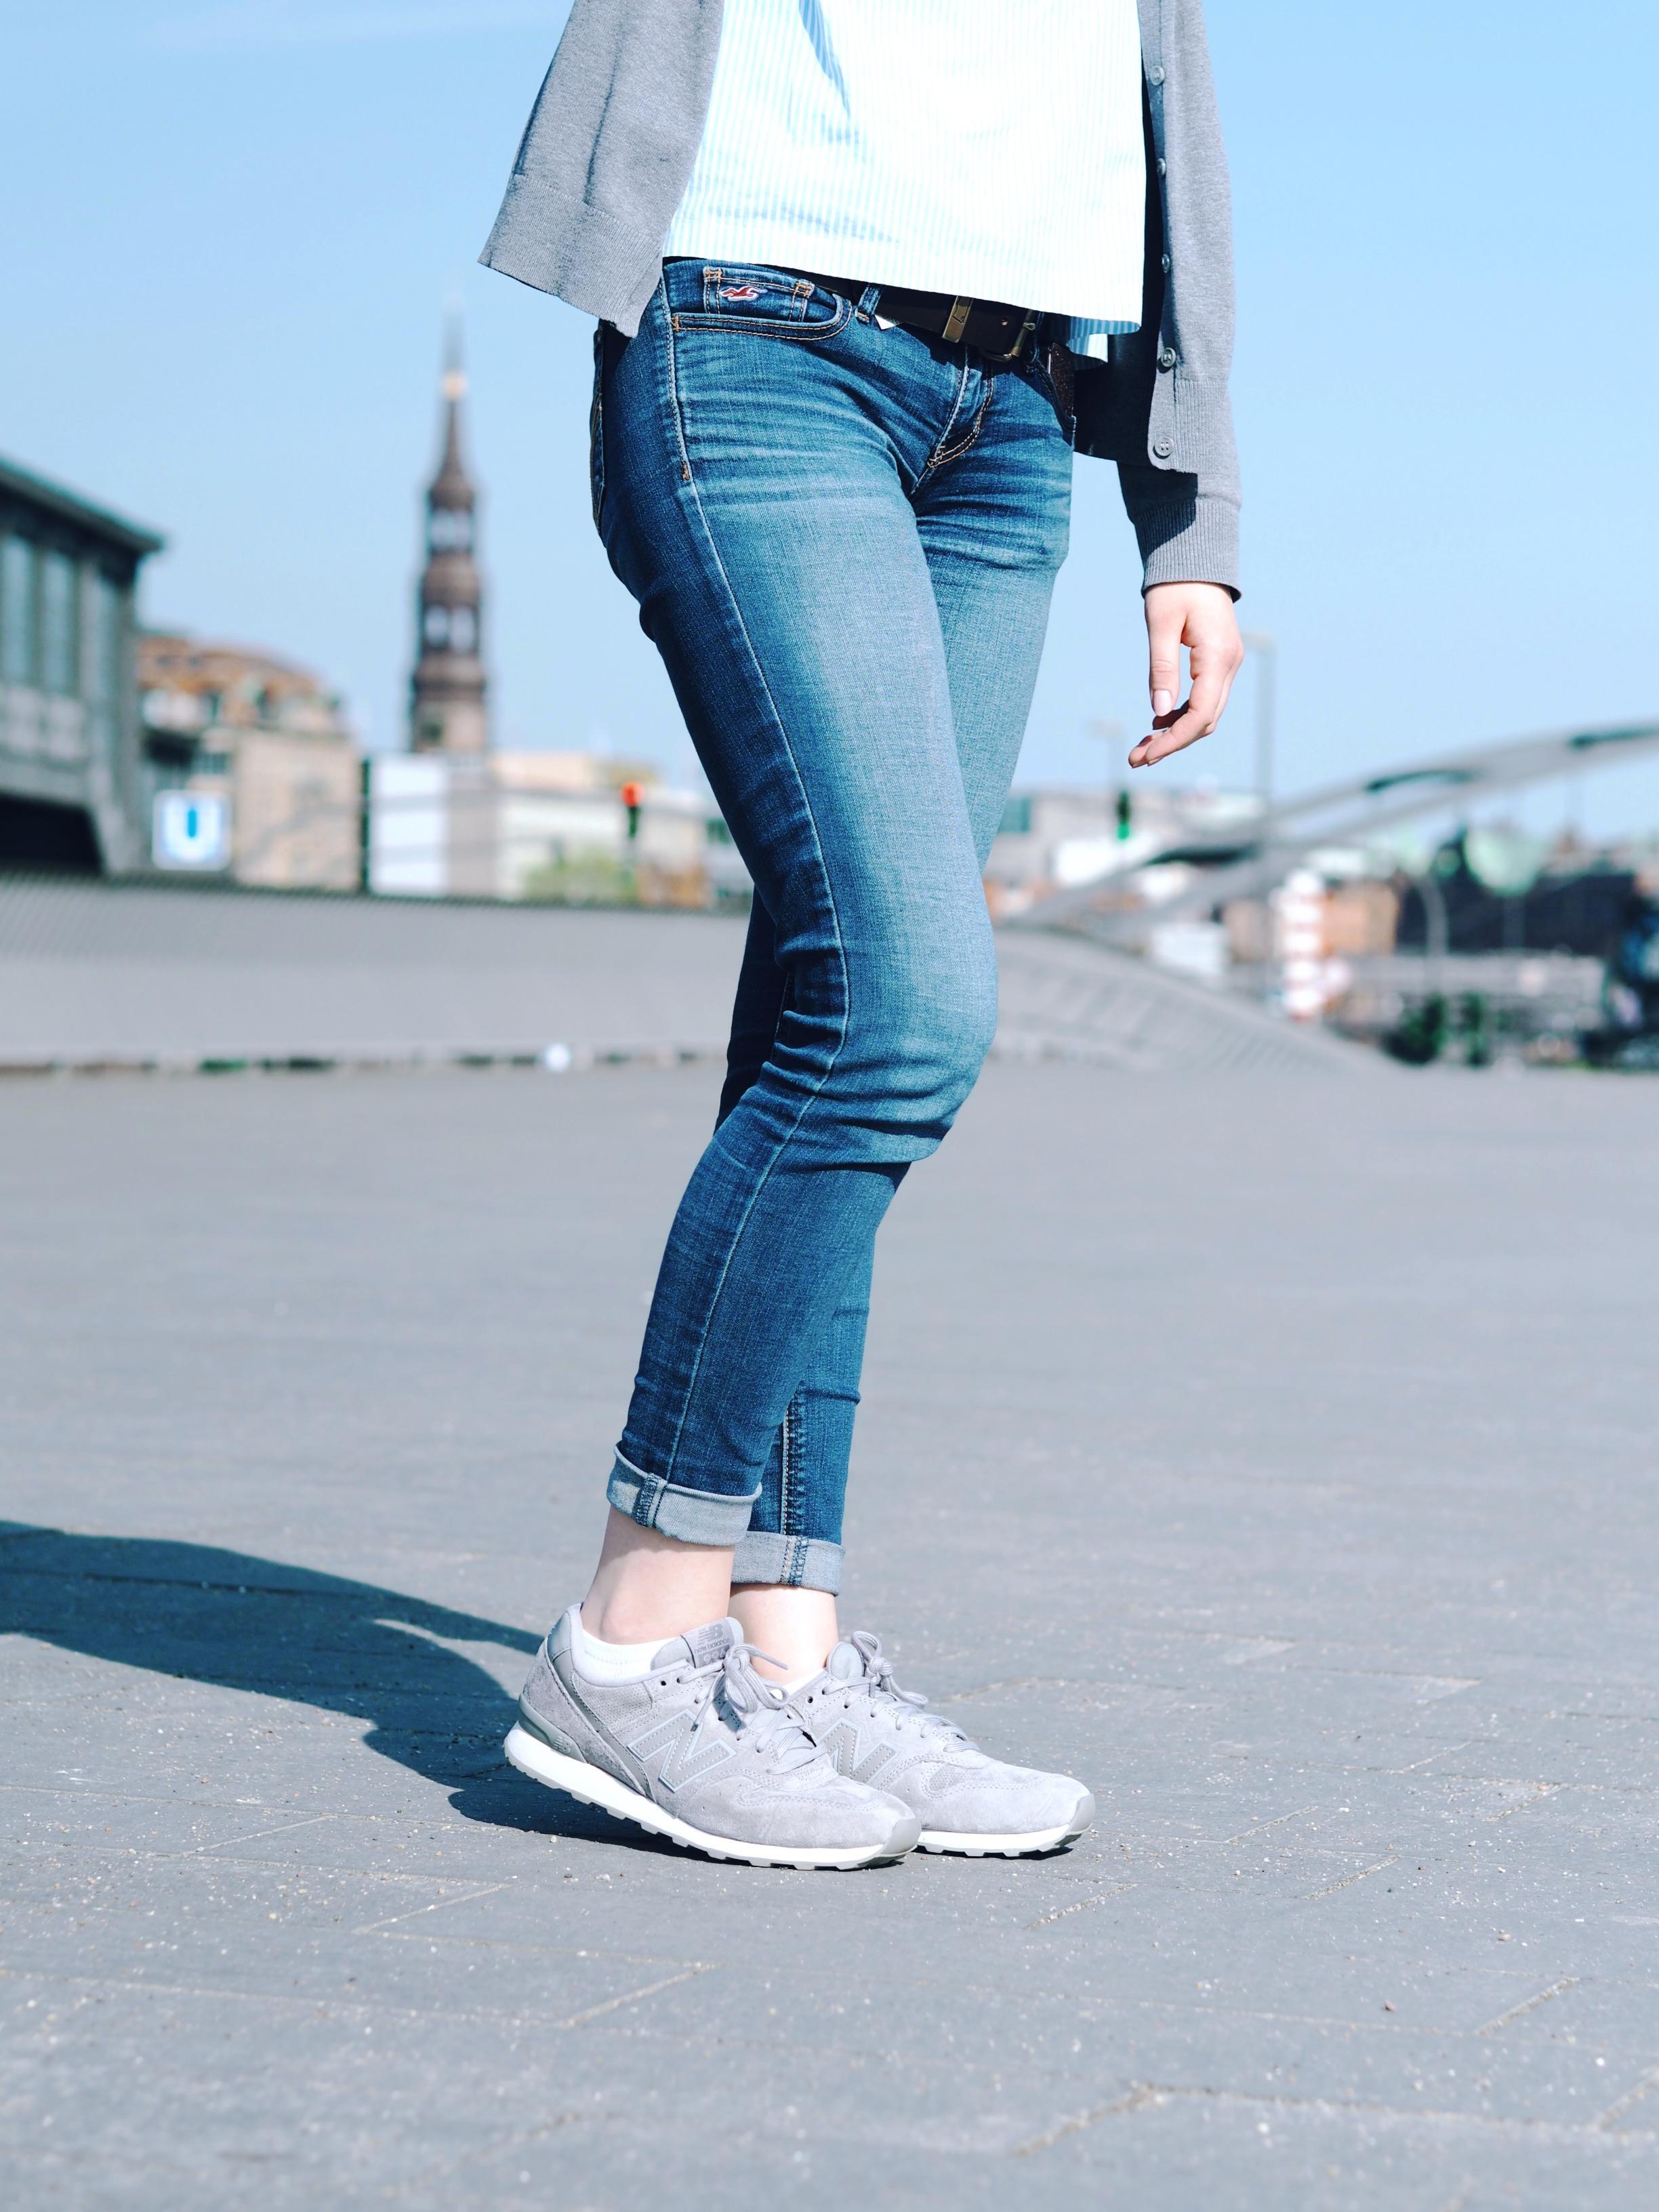 #sneaker#newbalance#grau#jeans#hamburg